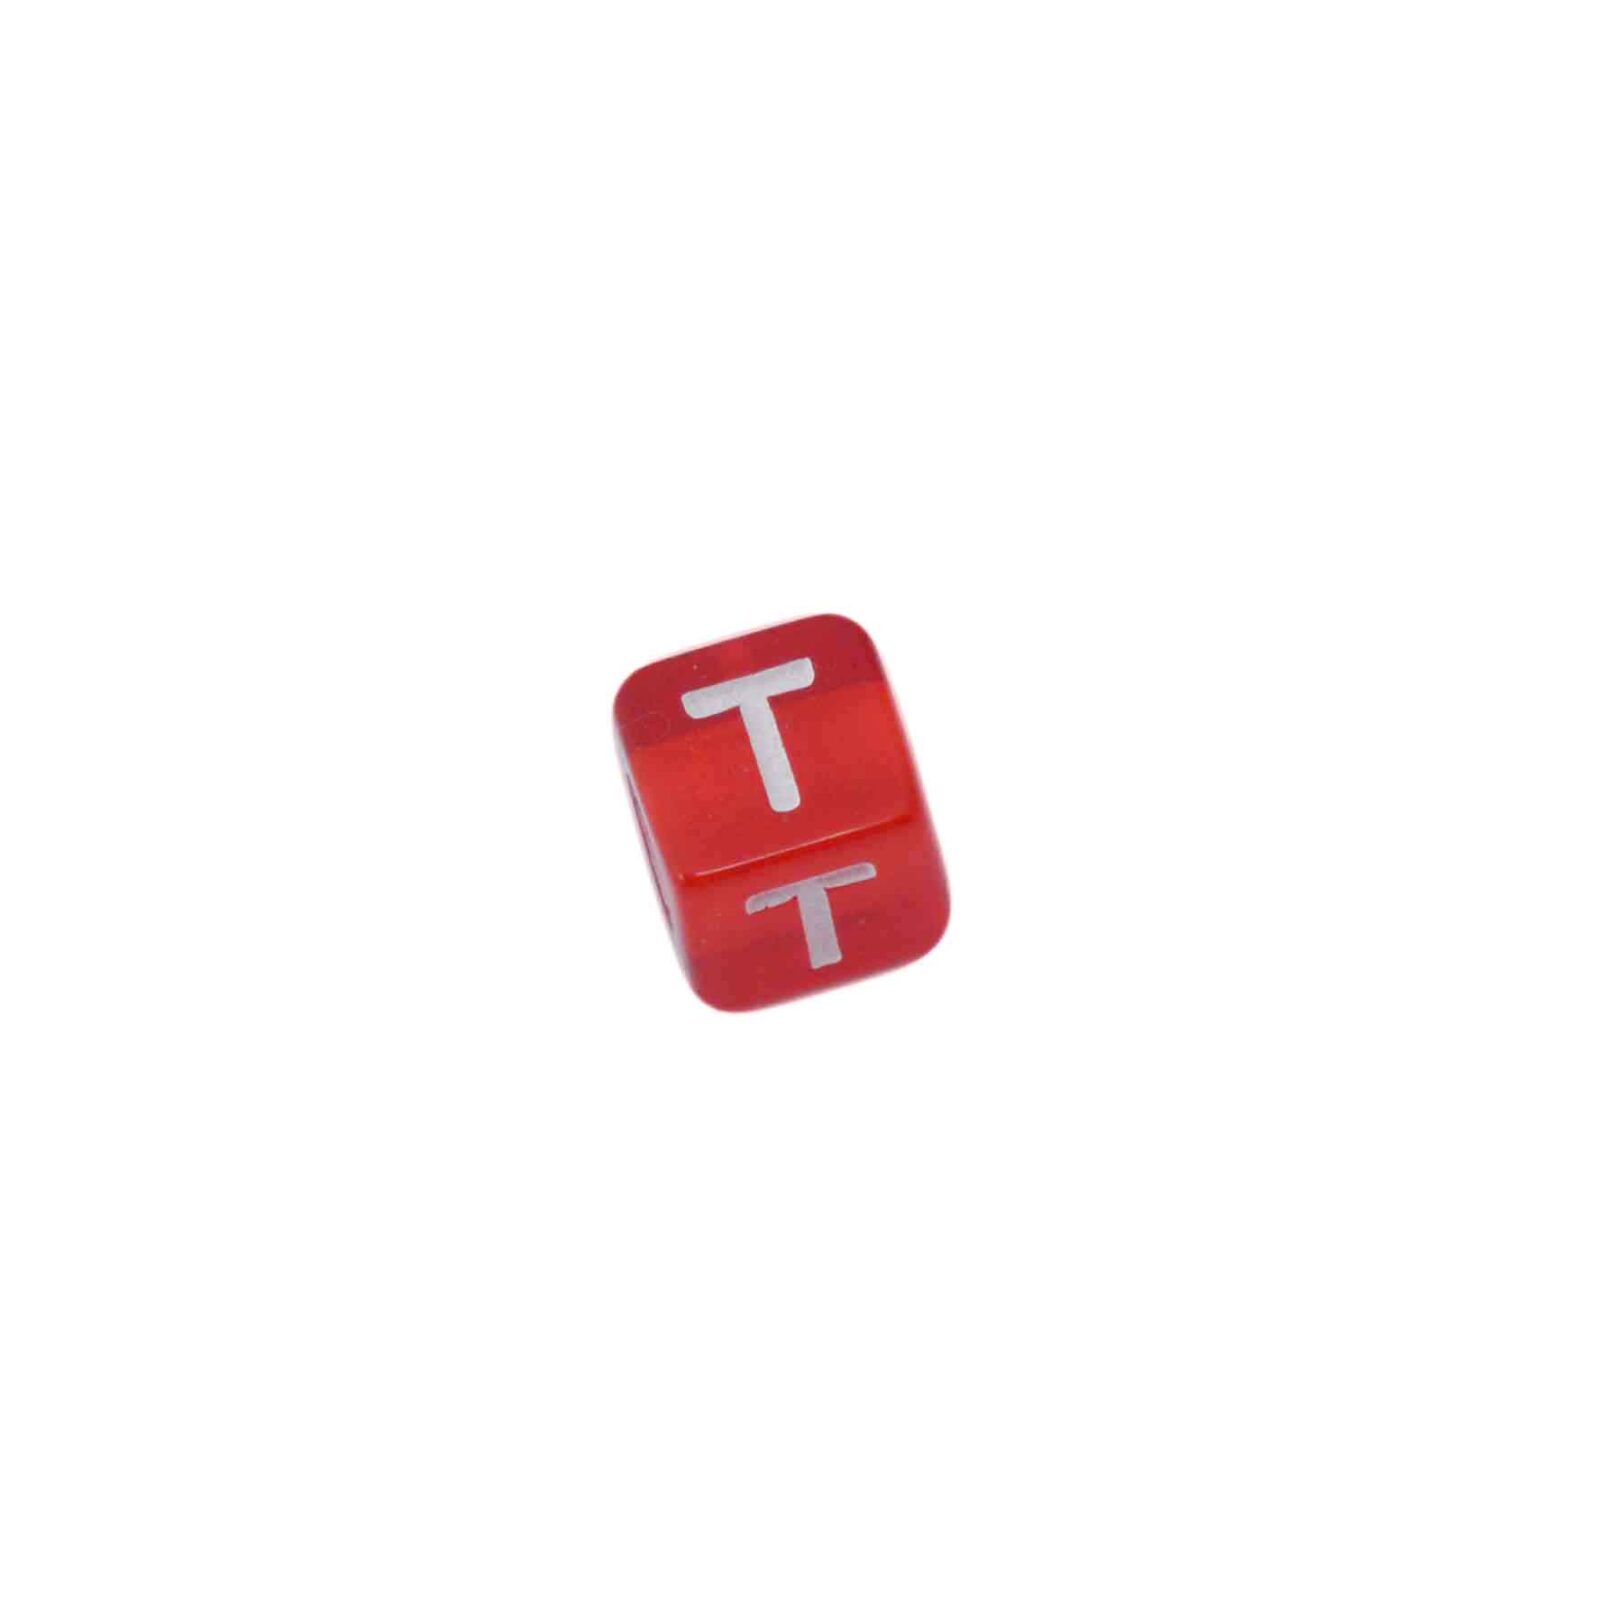 Rode letterkraal T